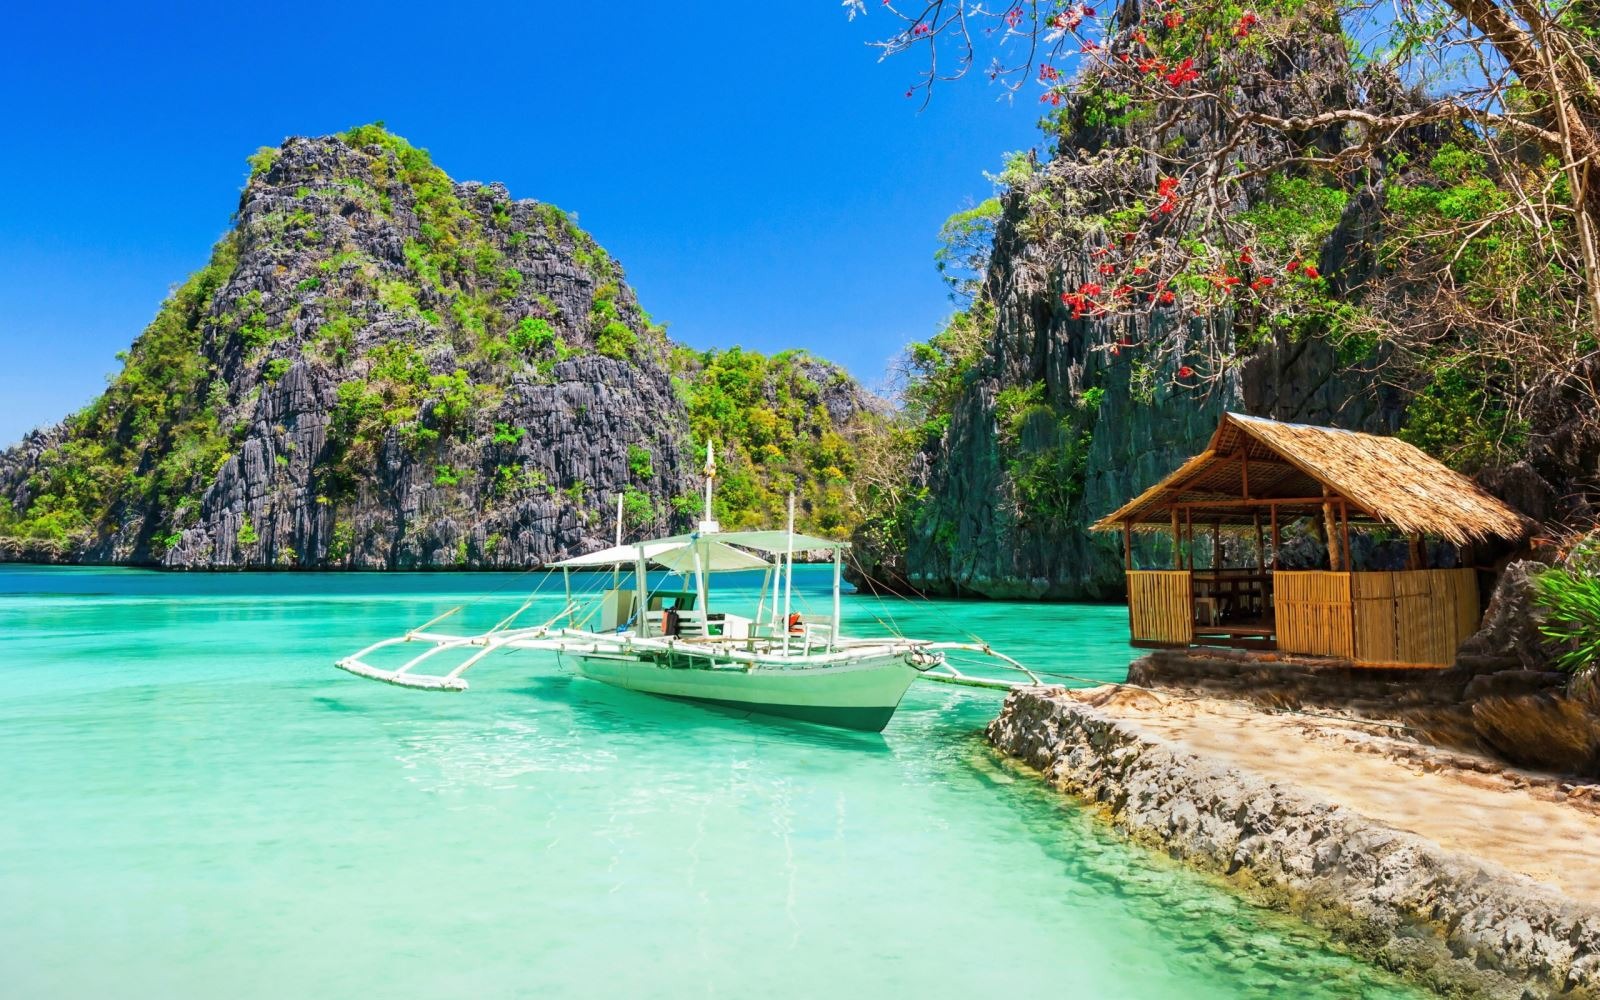 Du lịch Philippines: Kinh nghiệm, Lịch trình, Thời gian, Các điểm checkin đẹp